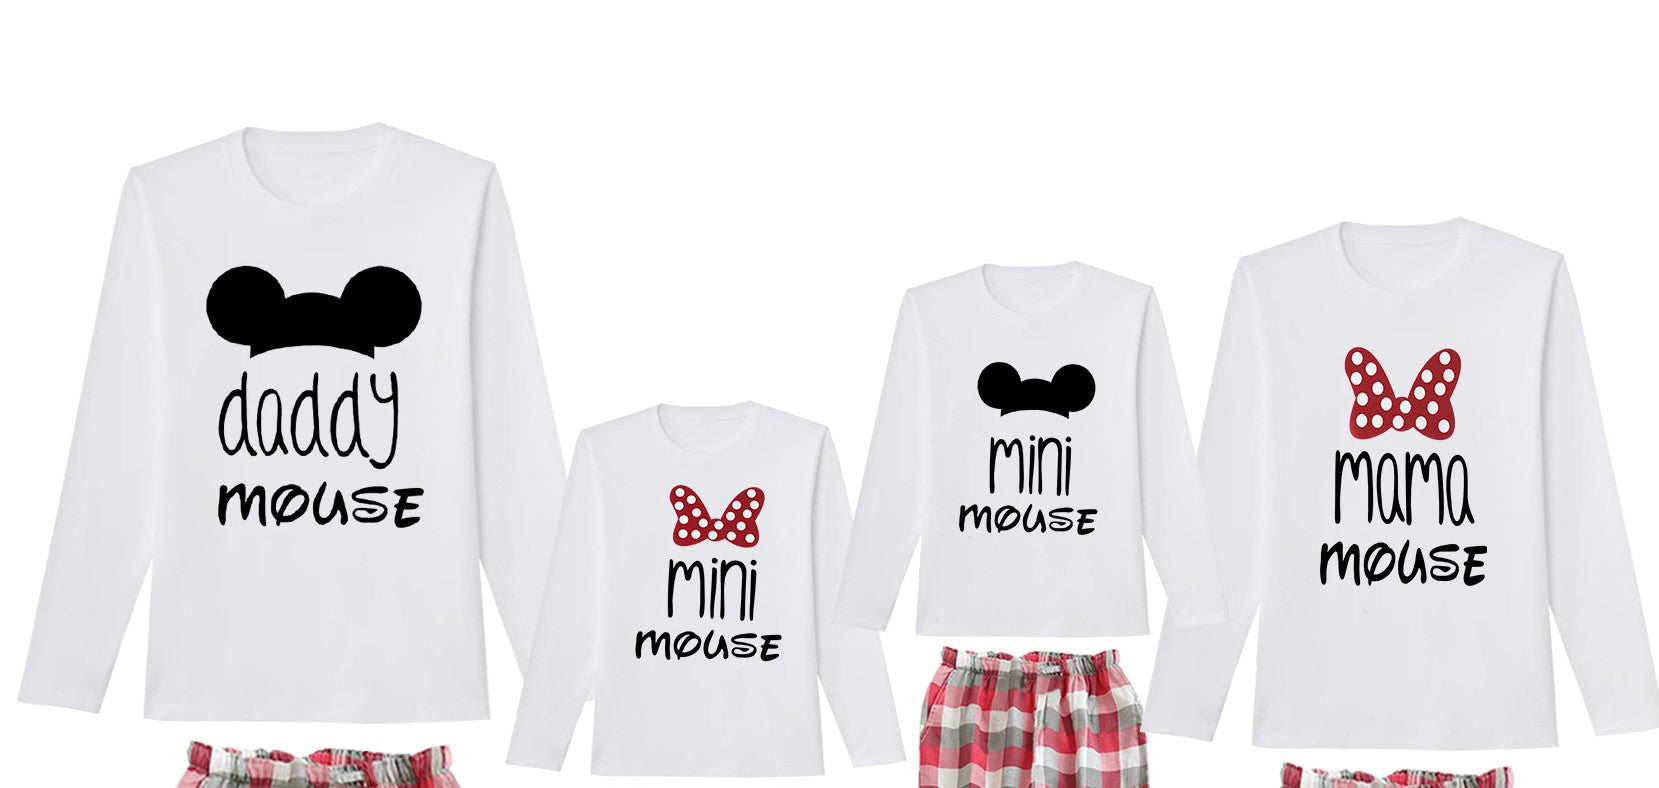 Camiseta Mama mouse mini mouse manga larga